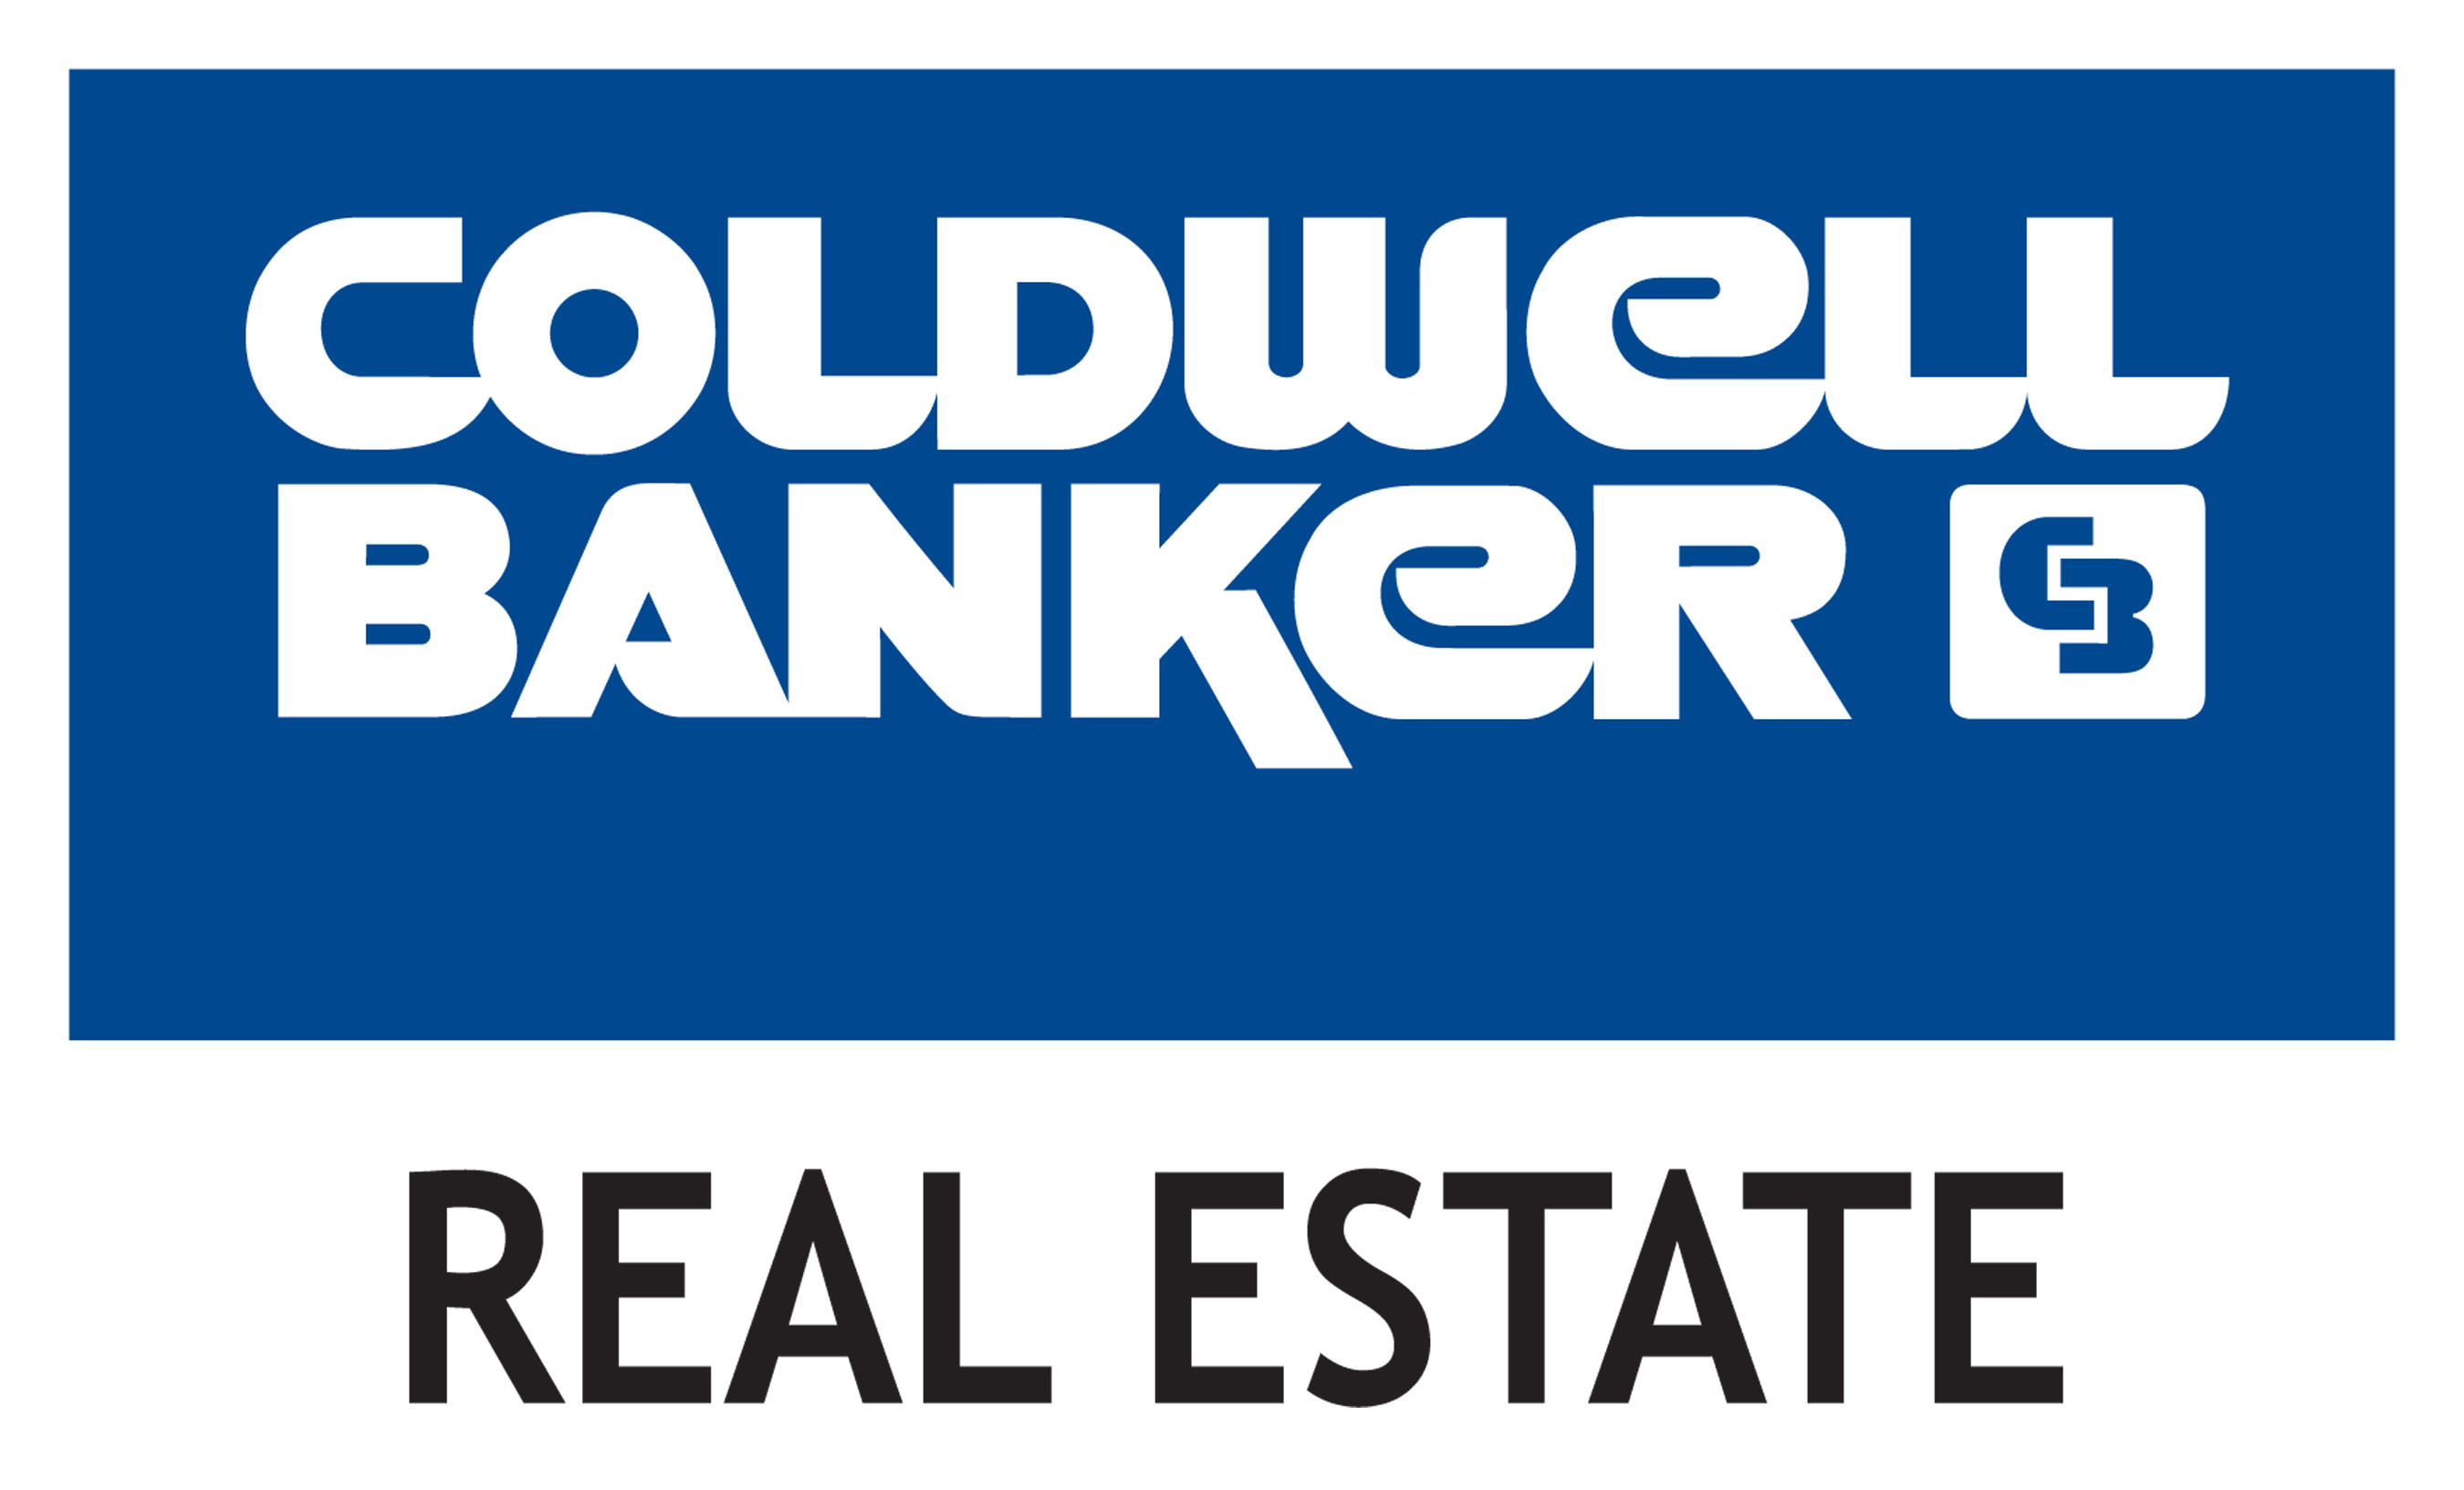 Coldwell Banker Real Estate LLC logo. (PRNewsFoto/Coldwell Banker Real Estate LLC)